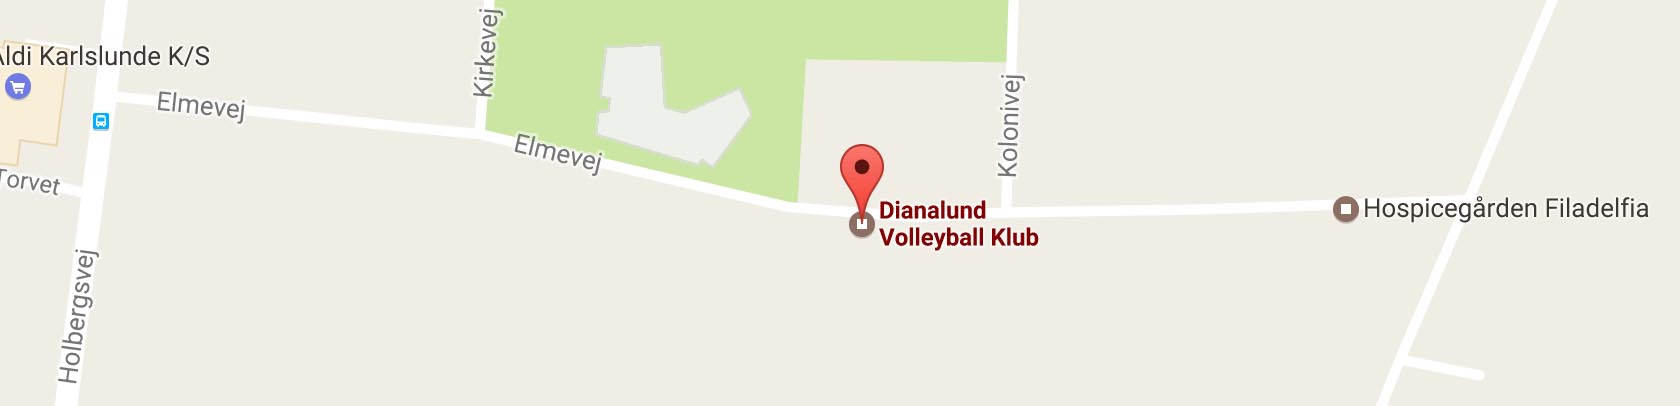 Dianalund Volleyball Klub